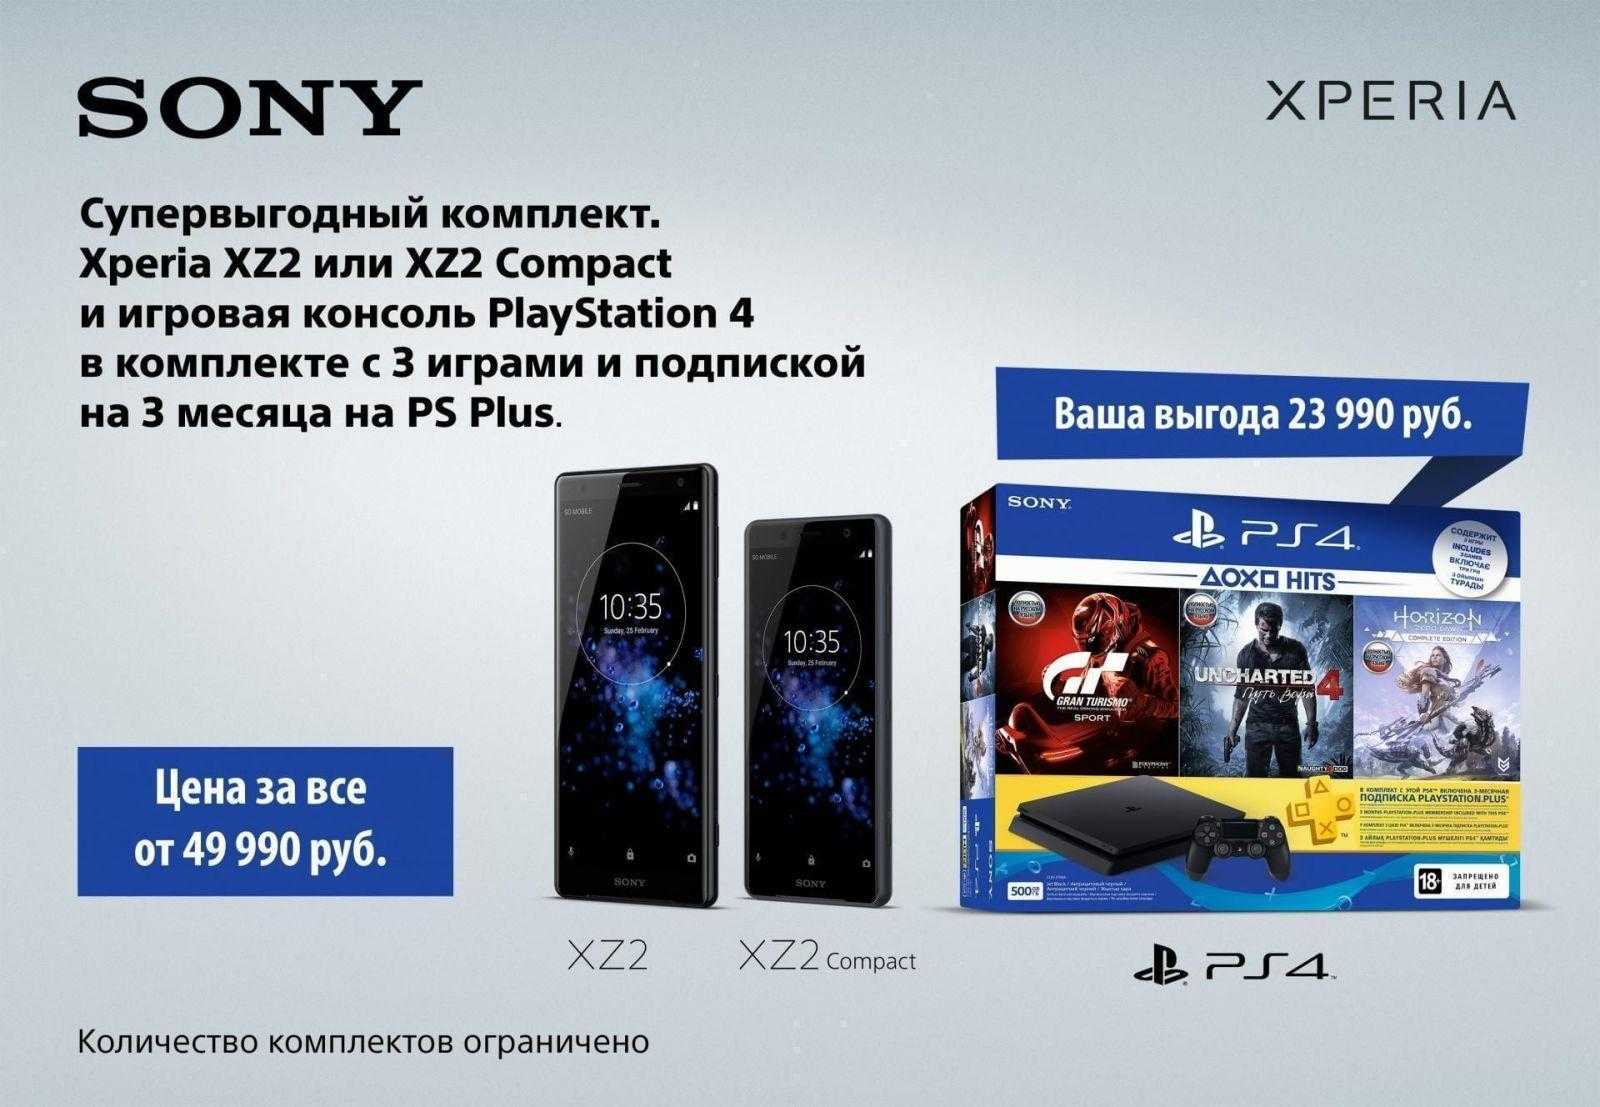 Sony подарит PlayStation 4 за покупку Xperia XZ2 (XperiaXZ2 PS4)